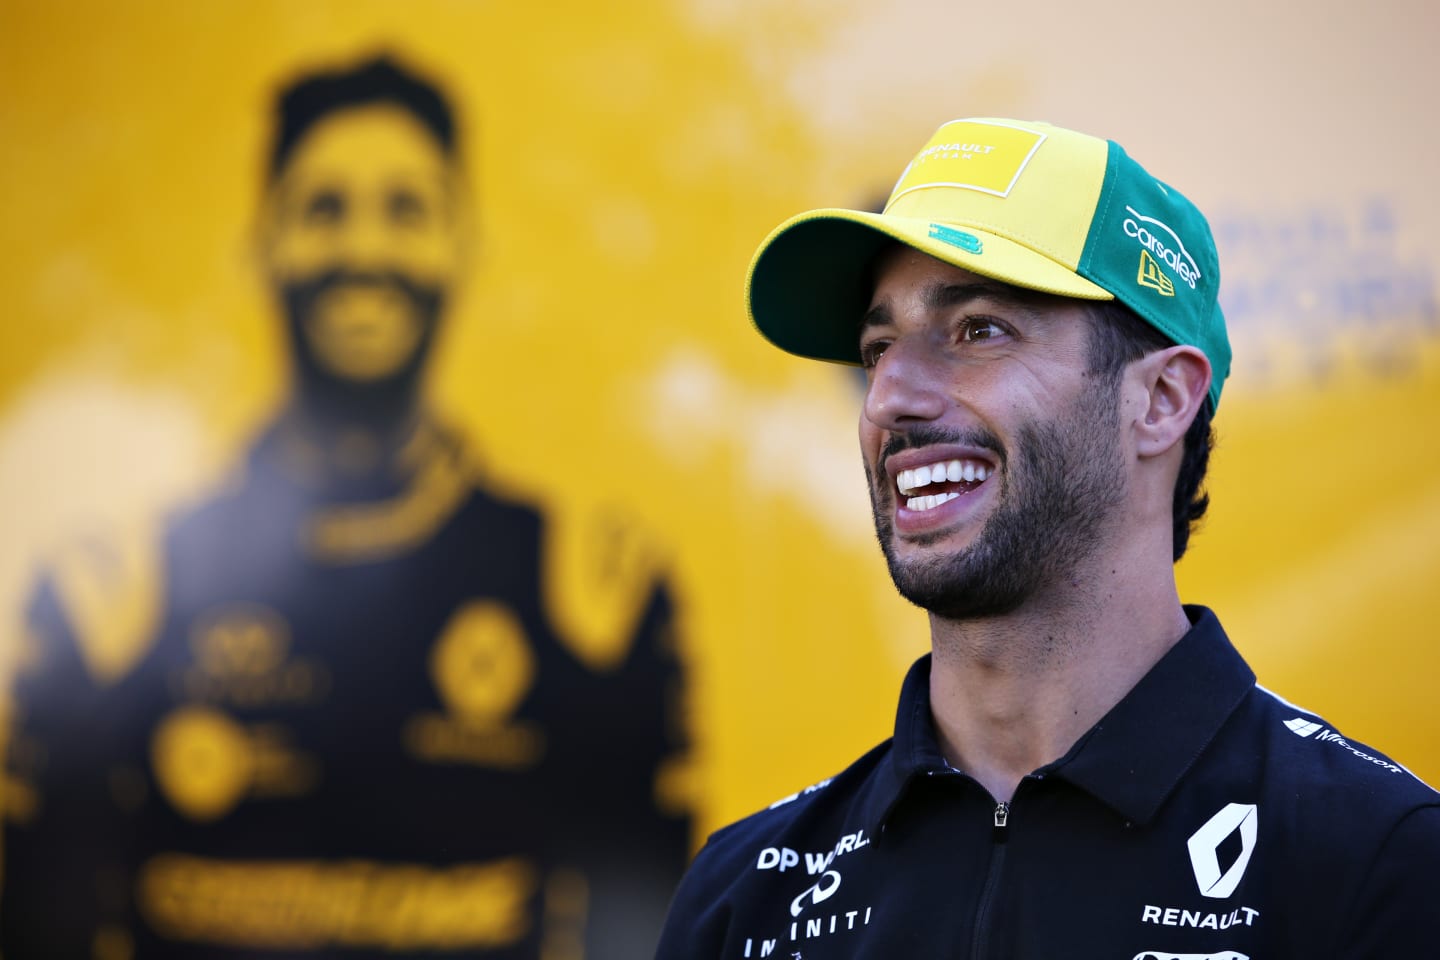 MELBOURNE, AUSTRALIA - MARCH 12: Daniel Ricciardo of Australia and Renault Sport F1 looks on in the